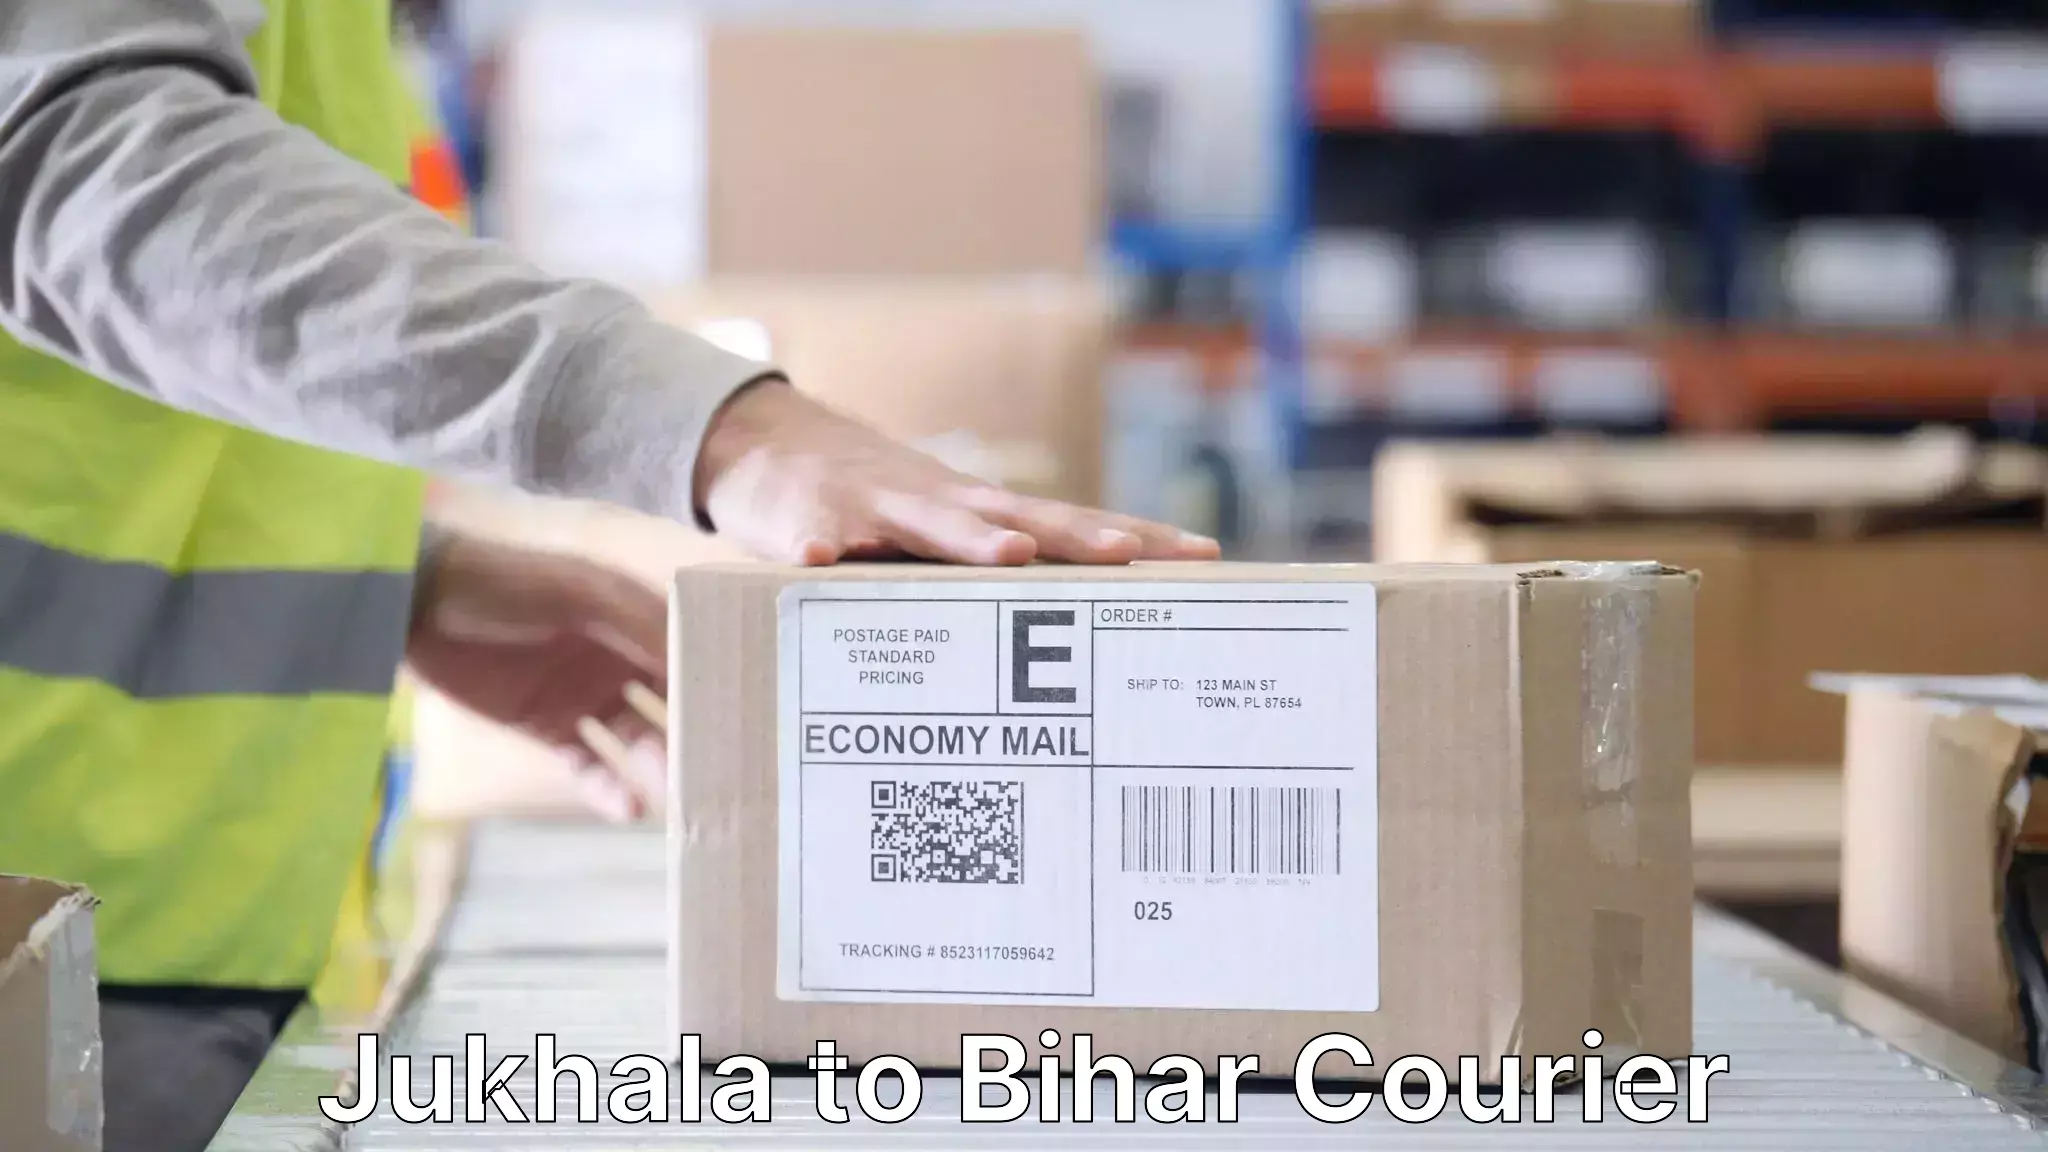 Furniture moving and handling Jukhala to Bihar